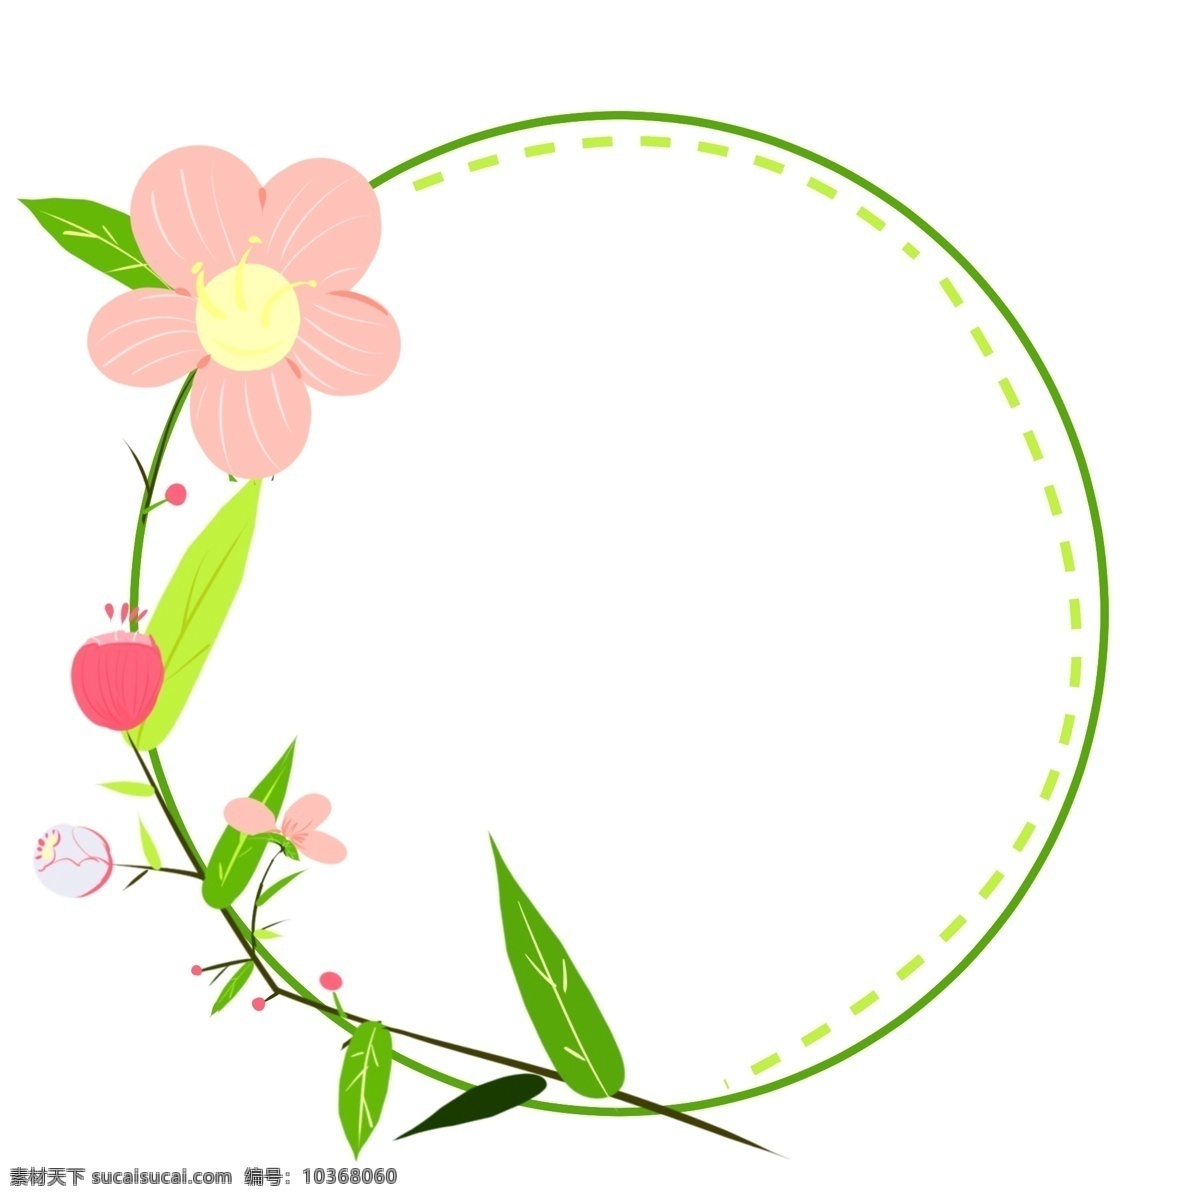 粉红 小花 边框 插画 粉红小花边框 绿色的叶子 植物边框 圆形边框 漂亮的边框 创意边框 立体边框